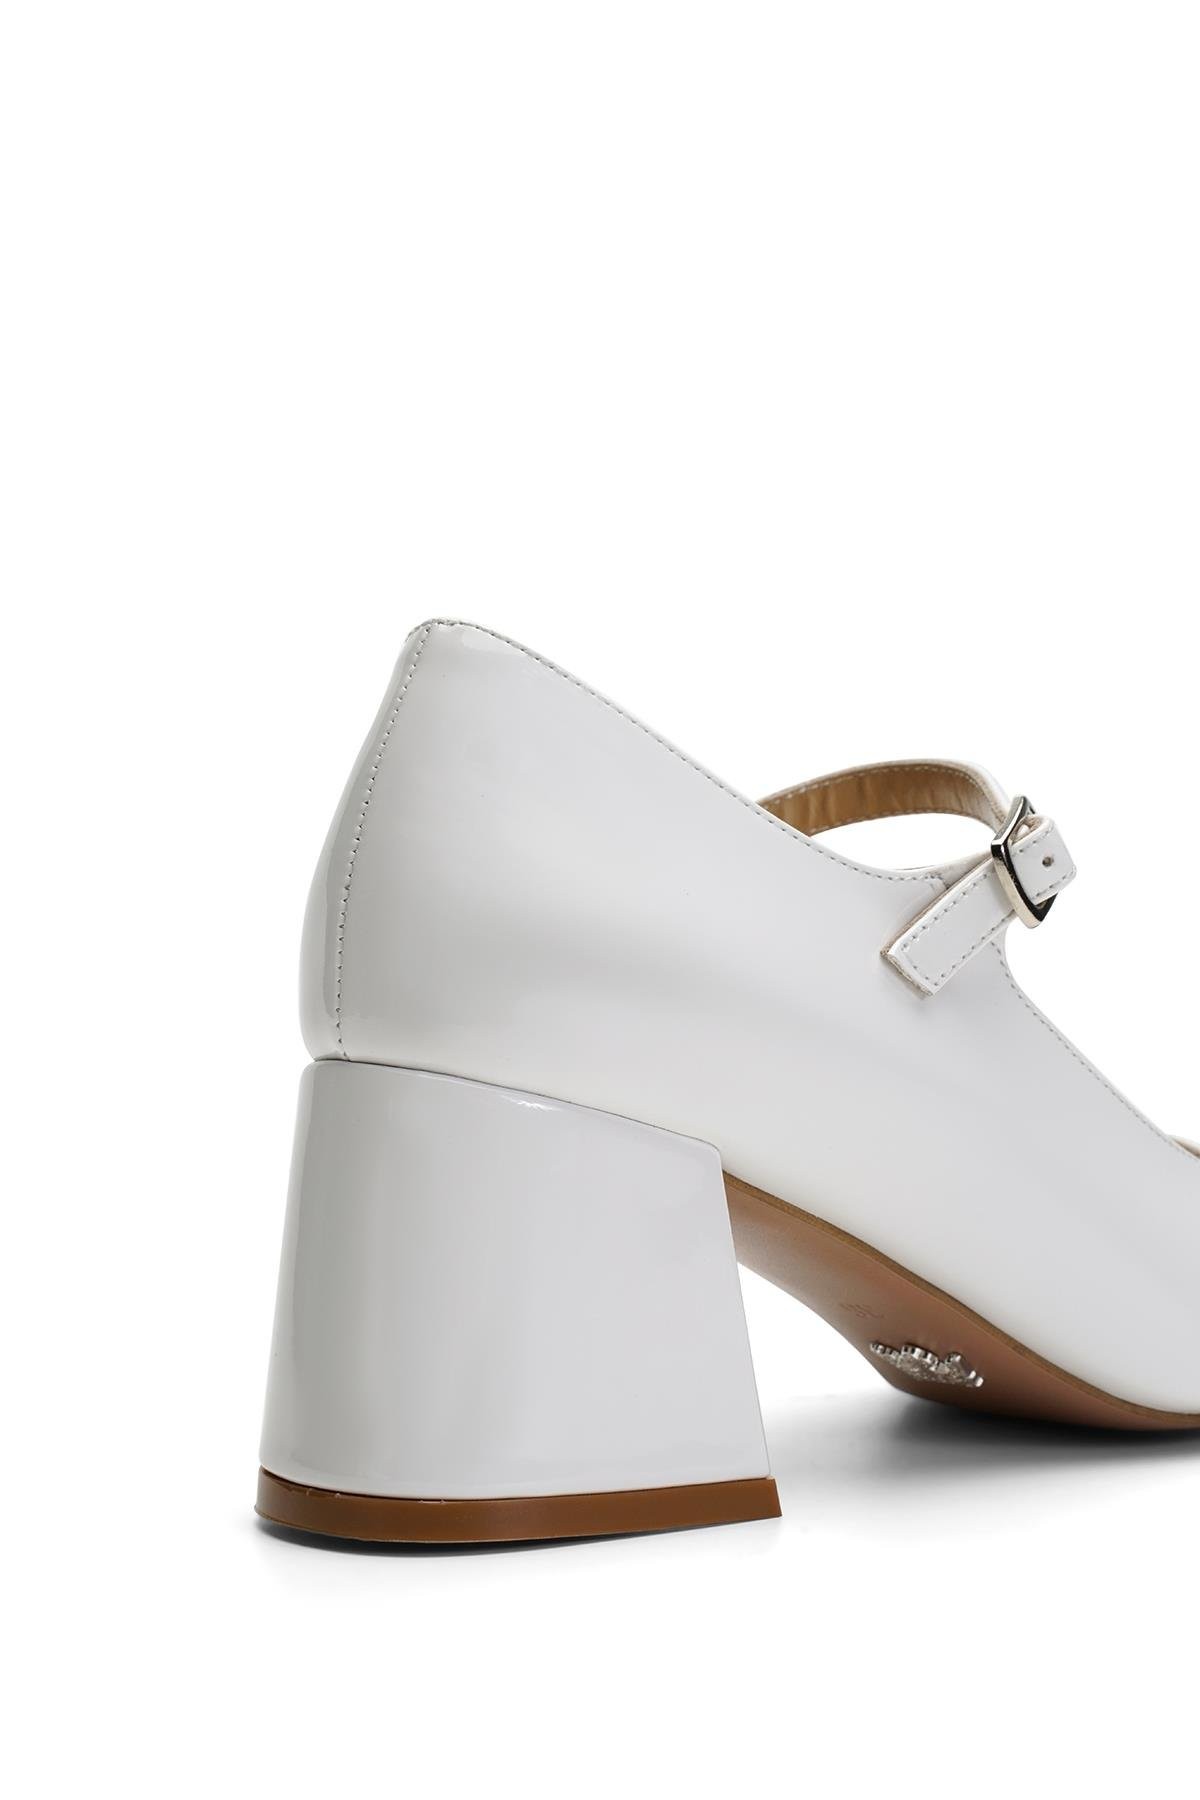 Jabotter Claudia Beyaz Rugan 6 Cm Topuklu Ayakkabı